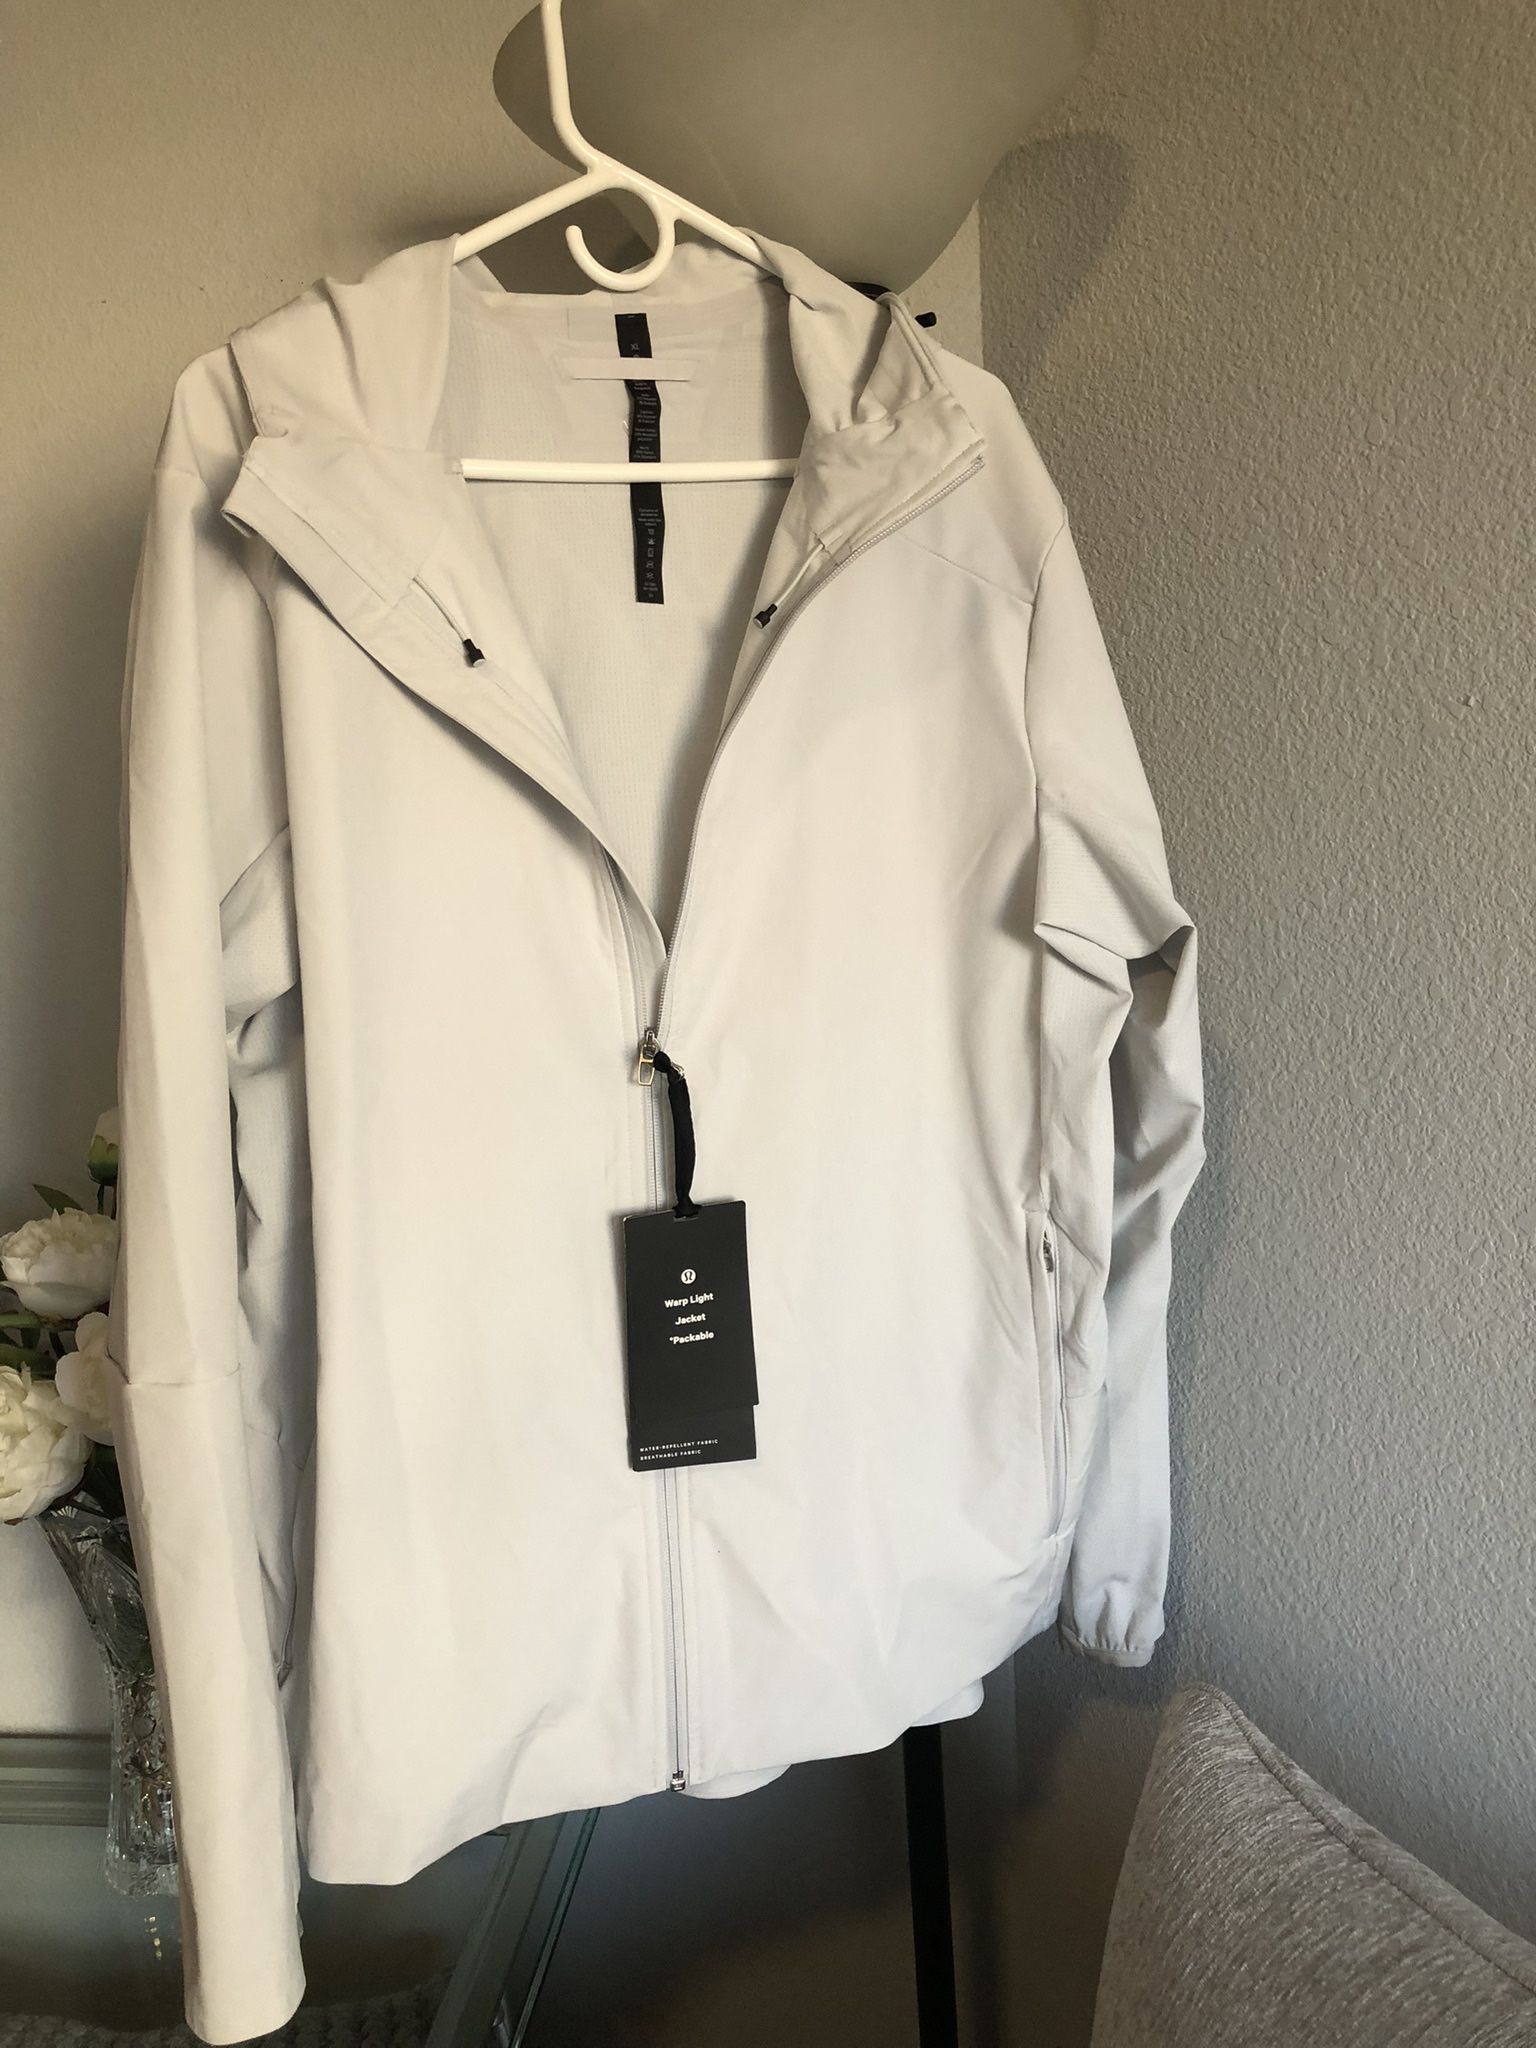 Lululemon Men’s Zipper Jacket Size XL